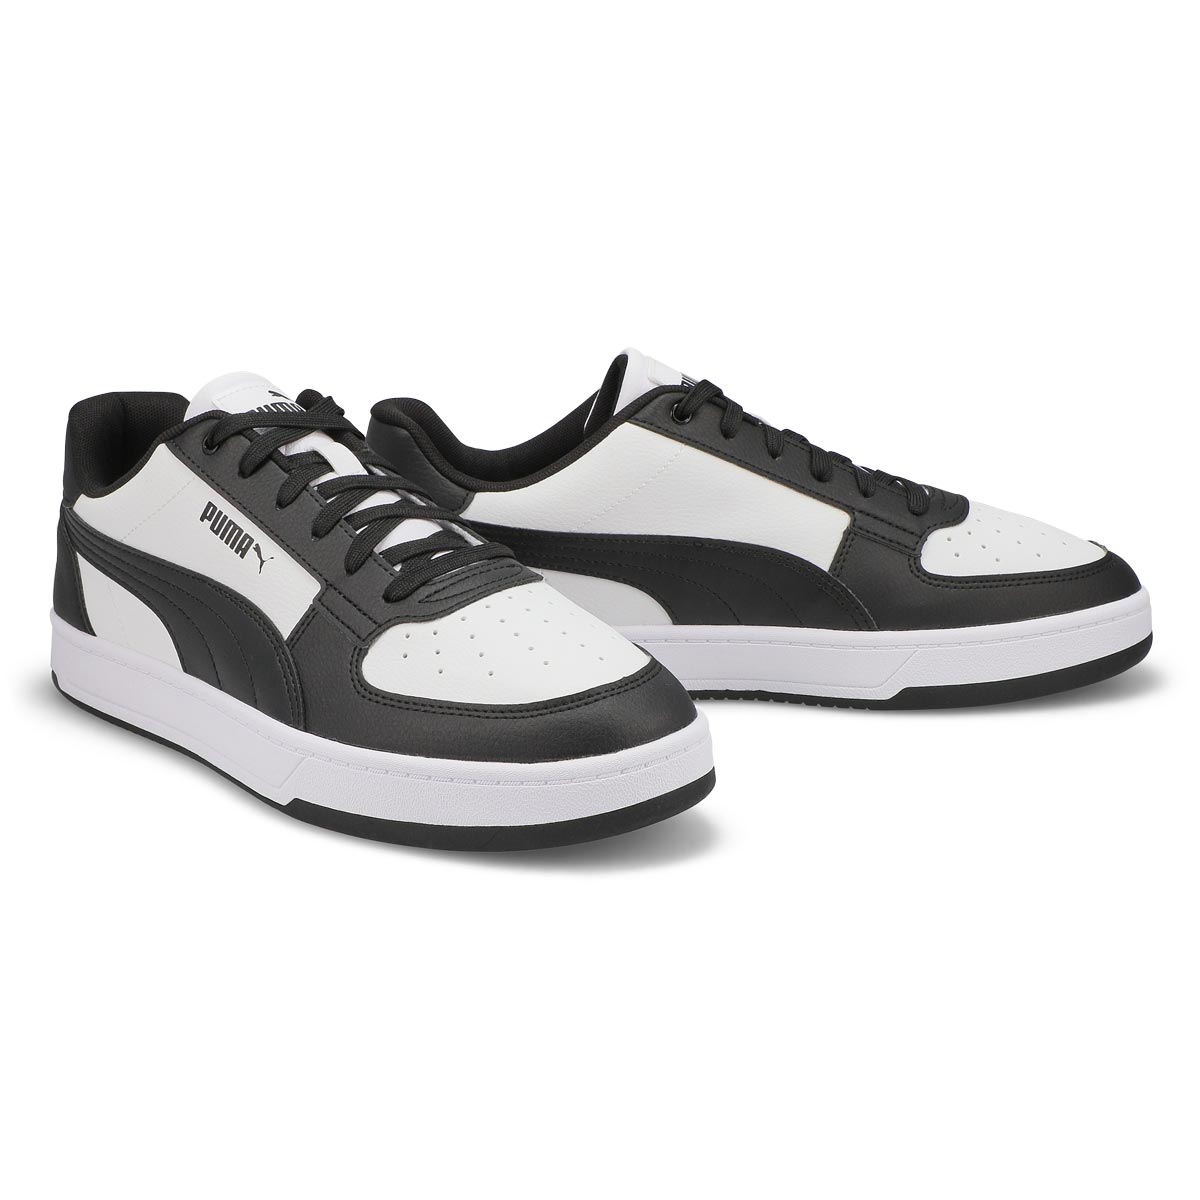 Men's Caven 2.0 Lace Up Sneaker - Black/White